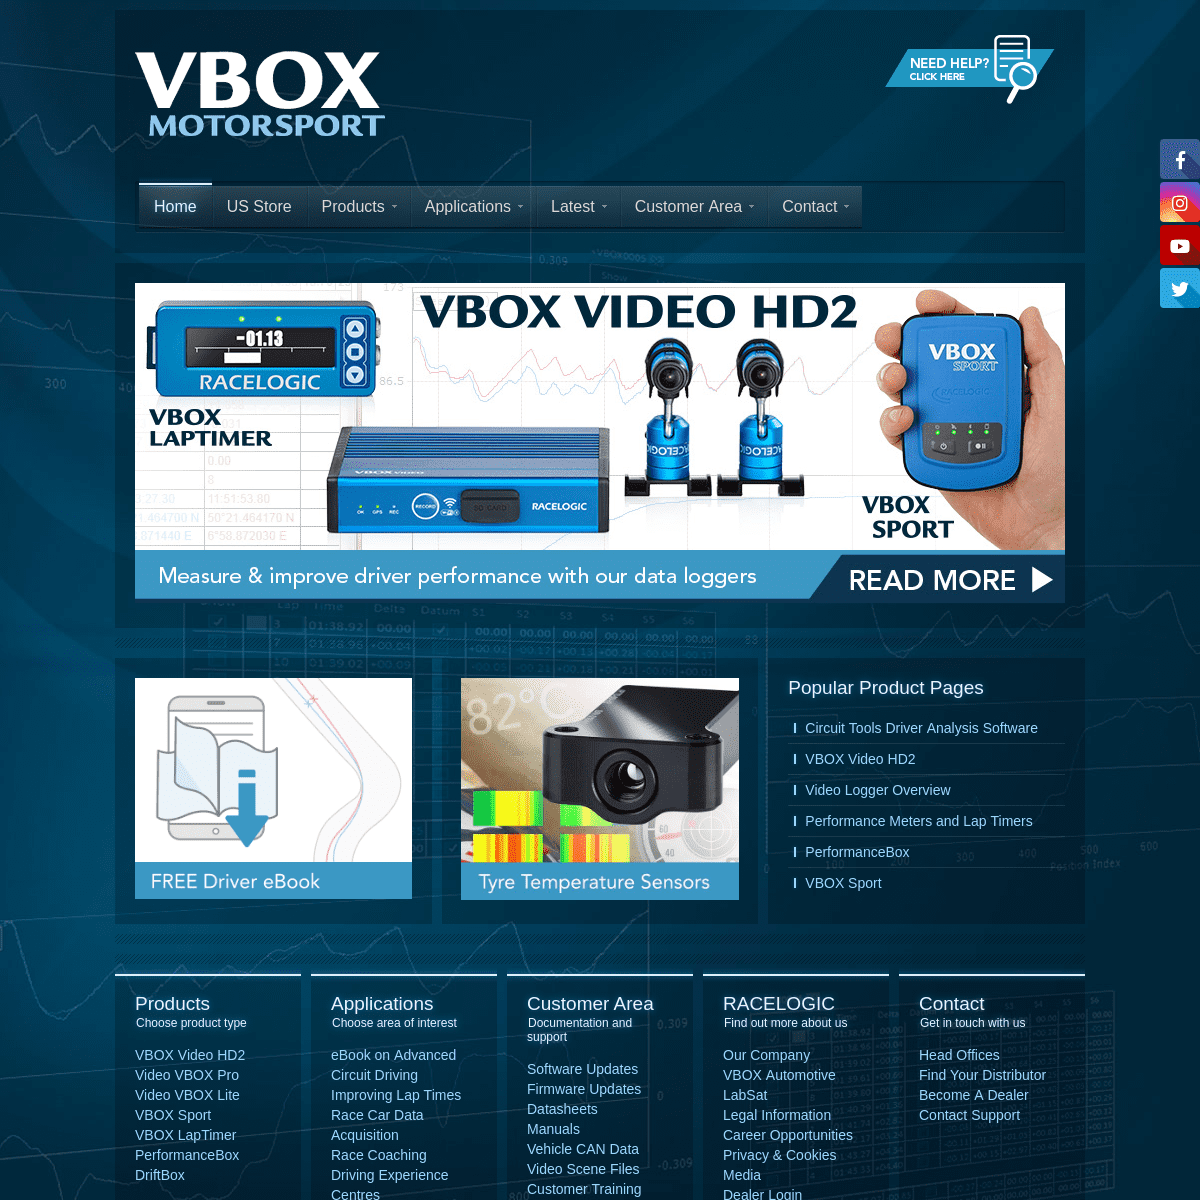 A complete backup of vboxmotorsport.com